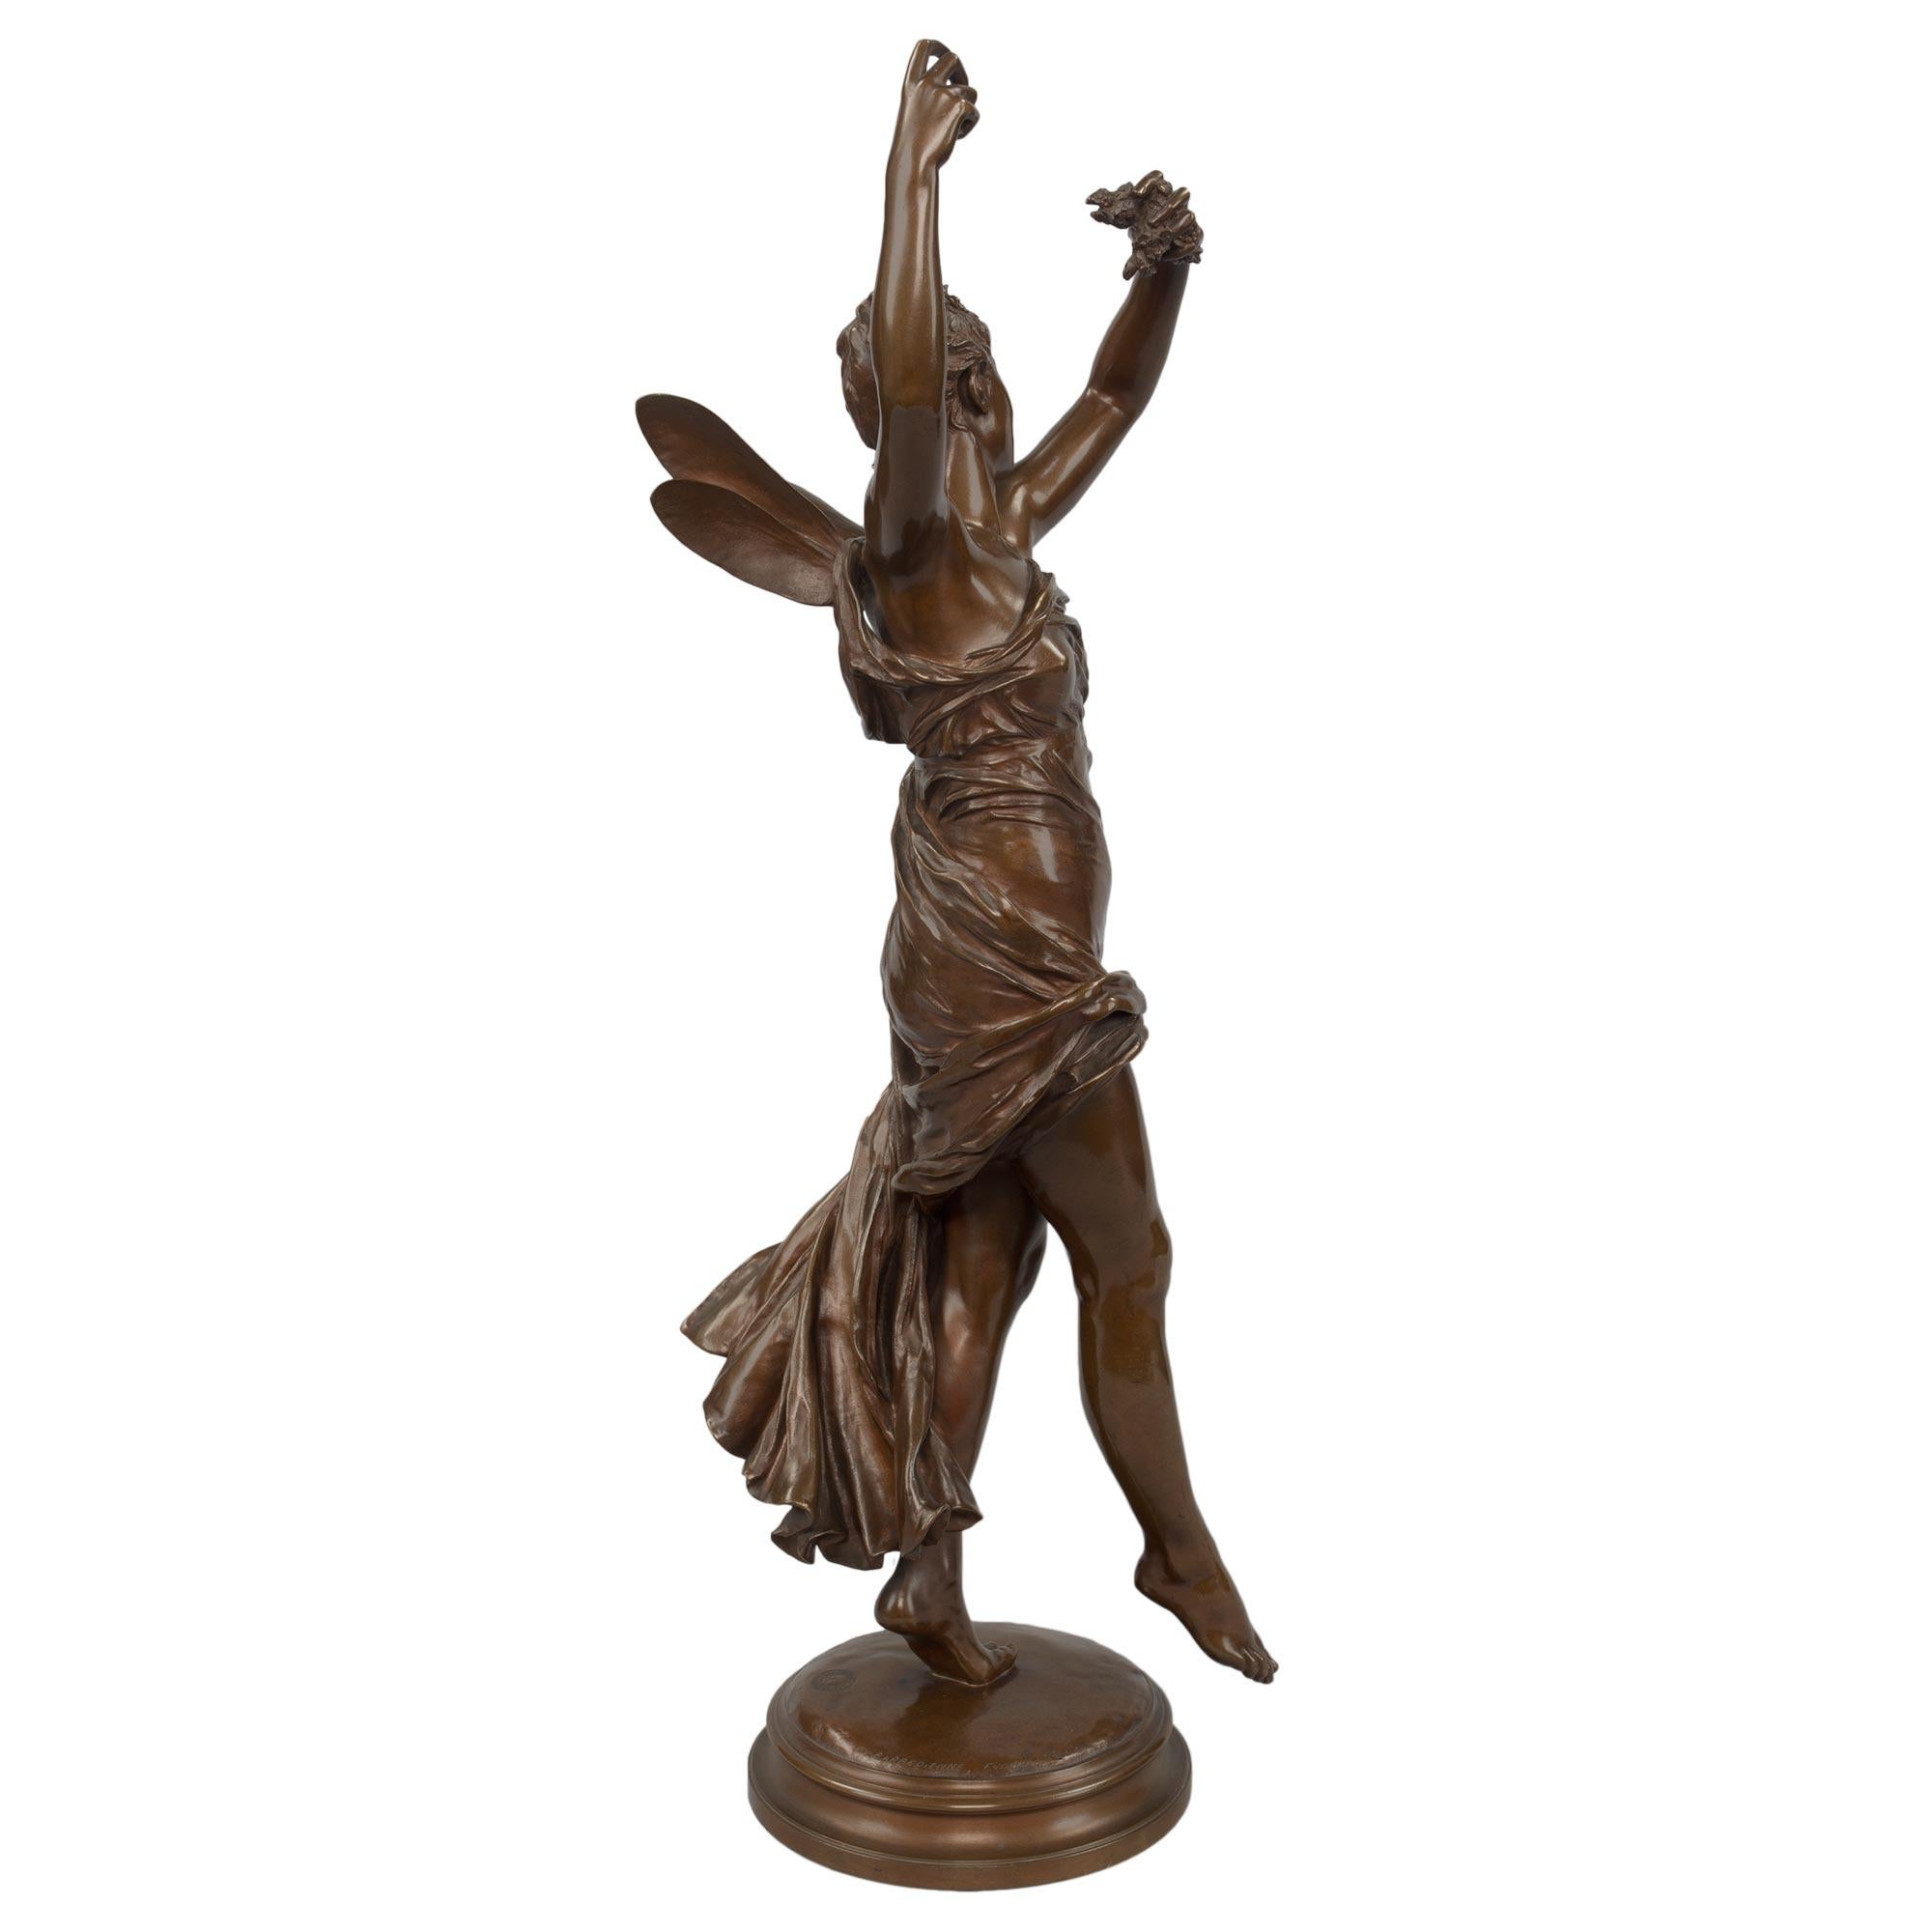 Un sensationnel bronze patiné du 19ème siècle français de très haute qualité représentant une Psyché souriante, signé par E. Delaplanche et coulé par la célèbre fonderie Barbedienne. Psyché est surélevée par une base circulaire mouchetée. Elle est